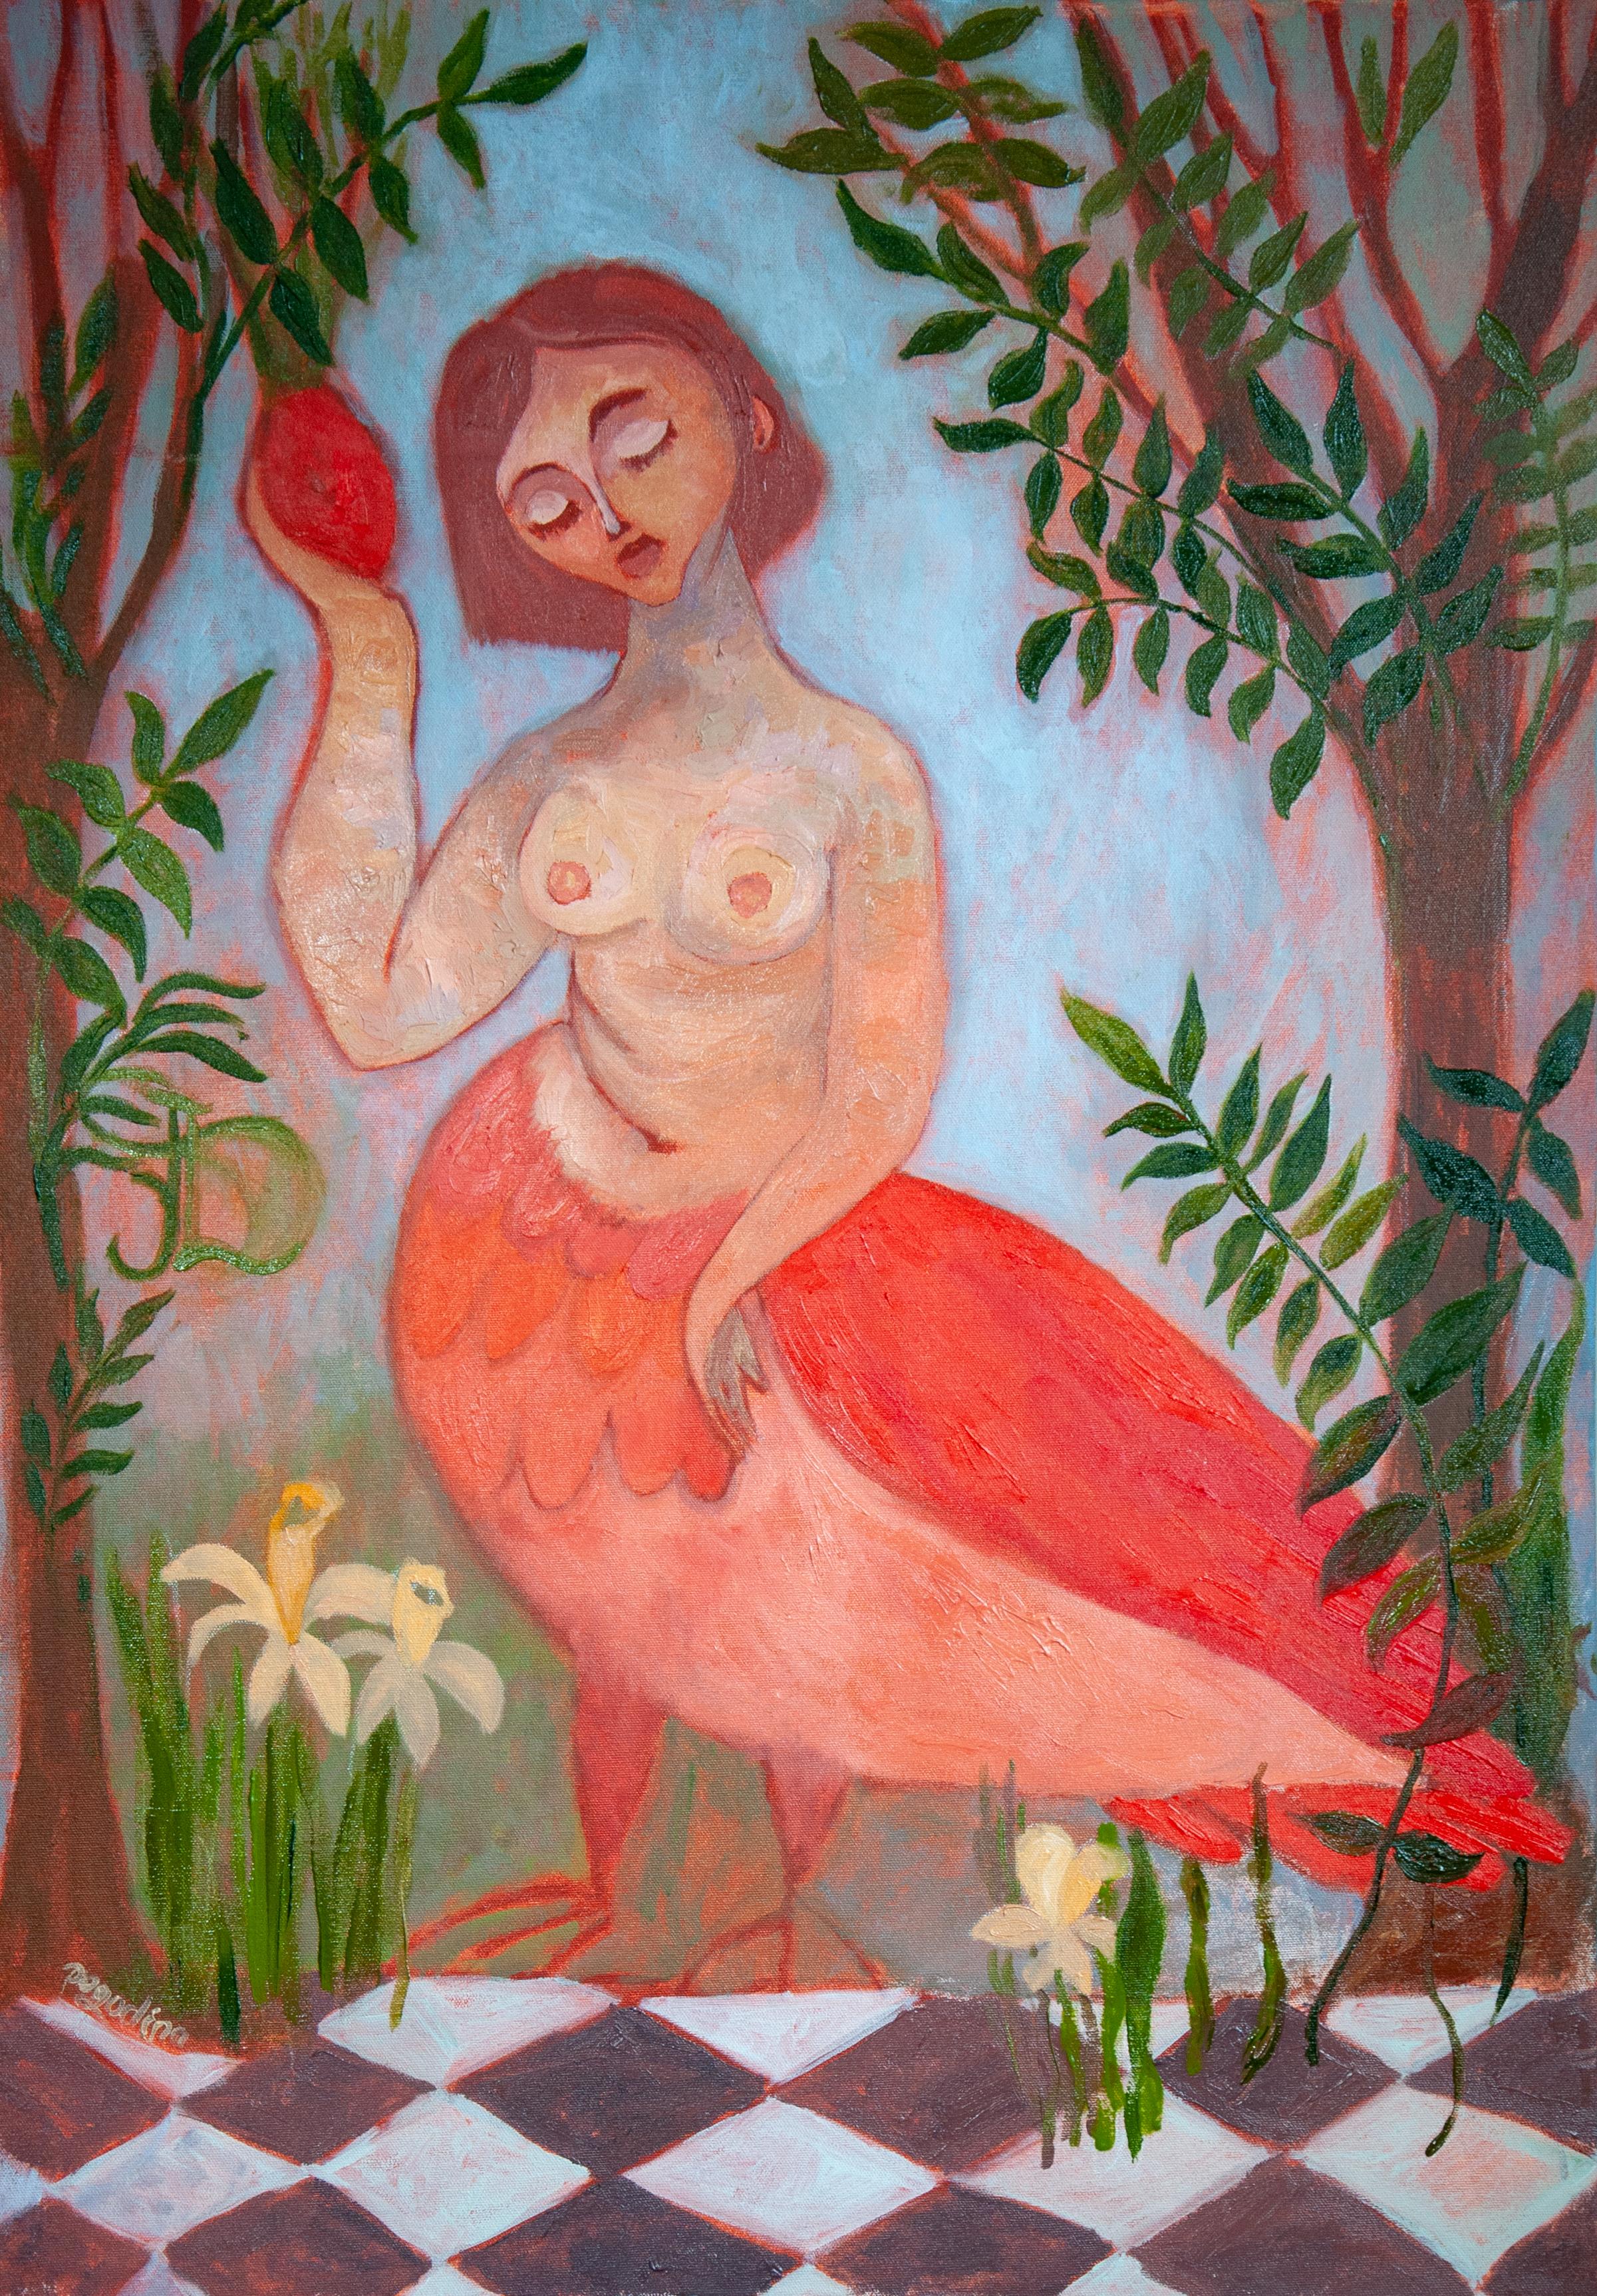 Sirens Art Modern Woman Nude, Bird Woman, canvas, oil  - Garden guards 